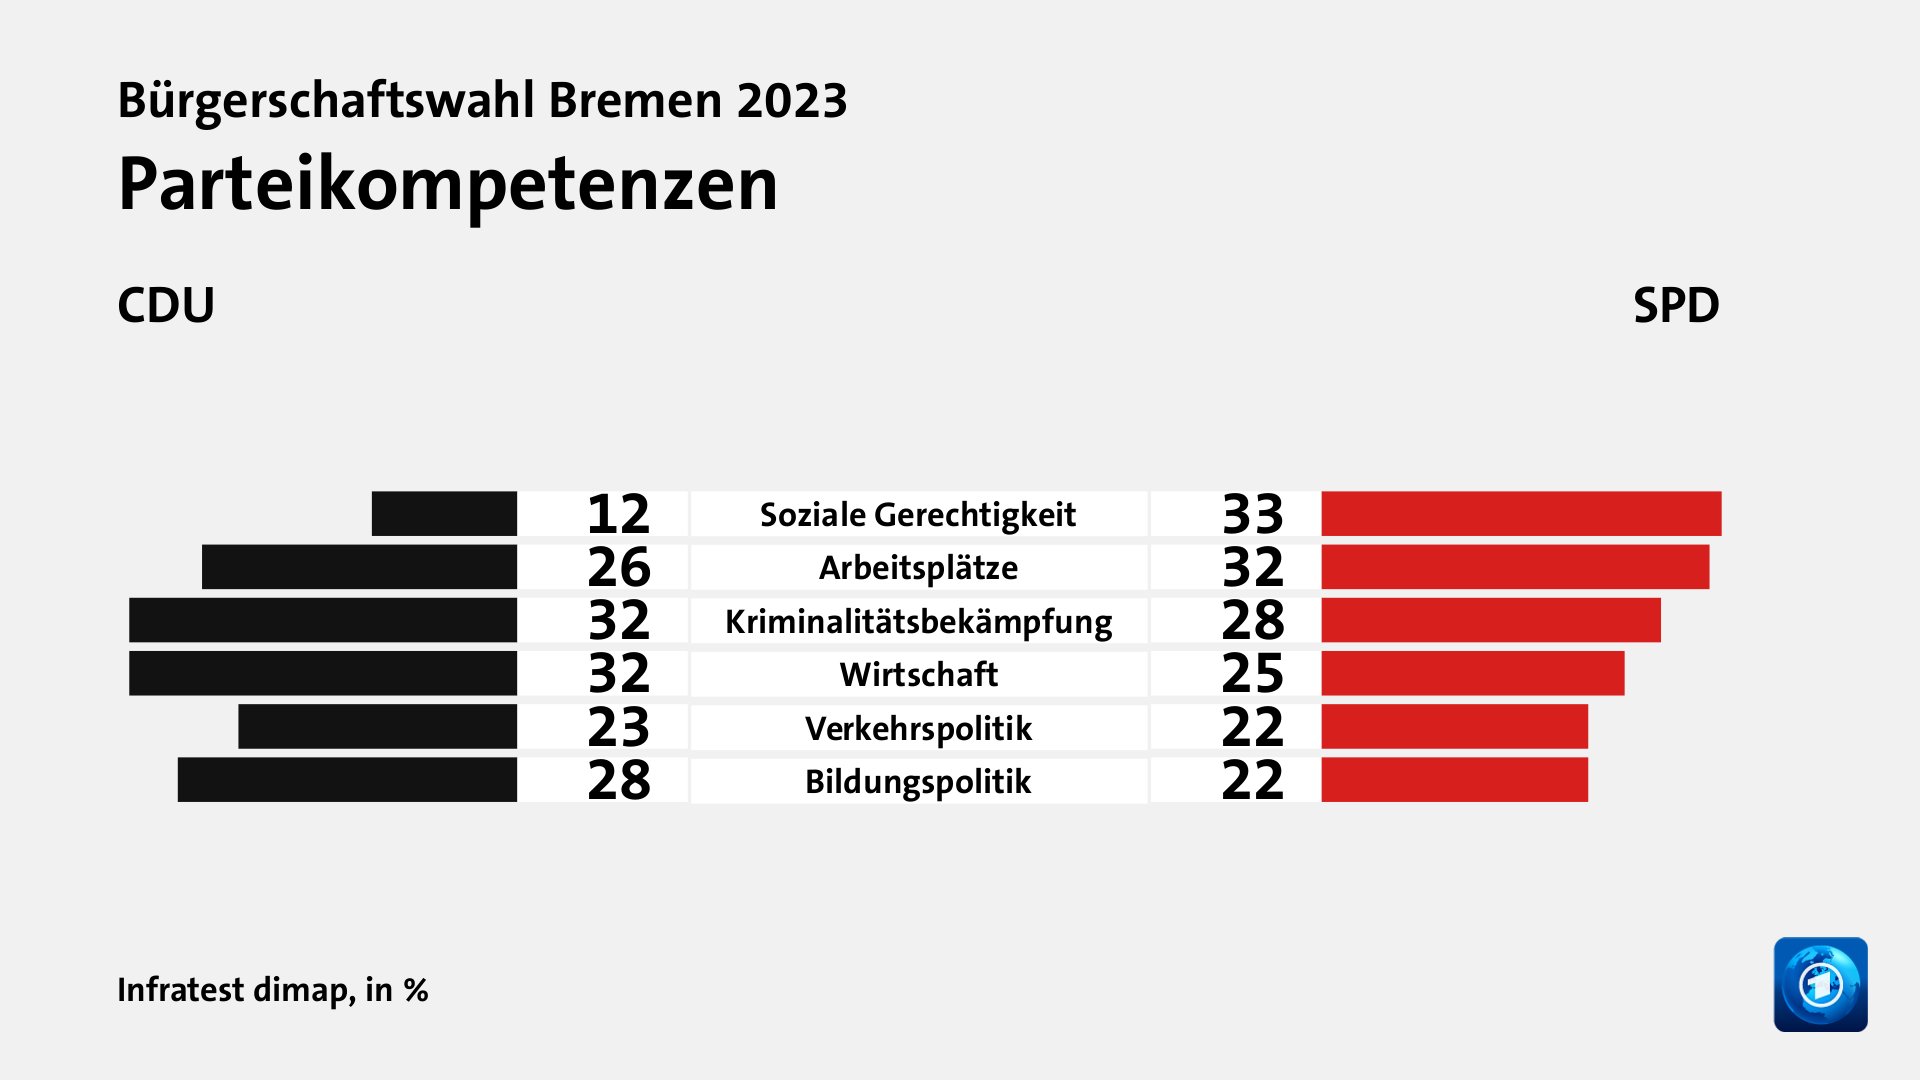 Parteikompetenzen (in %) Soziale Gerechtigkeit: CDU 12, SPD 33; Arbeitsplätze: CDU 26, SPD 32; Kriminalitätsbekämpfung: CDU 32, SPD 28; Wirtschaft: CDU 32, SPD 25; Verkehrspolitik: CDU 23, SPD 22; Bildungspolitik: CDU 28, SPD 22; Quelle: Infratest dimap